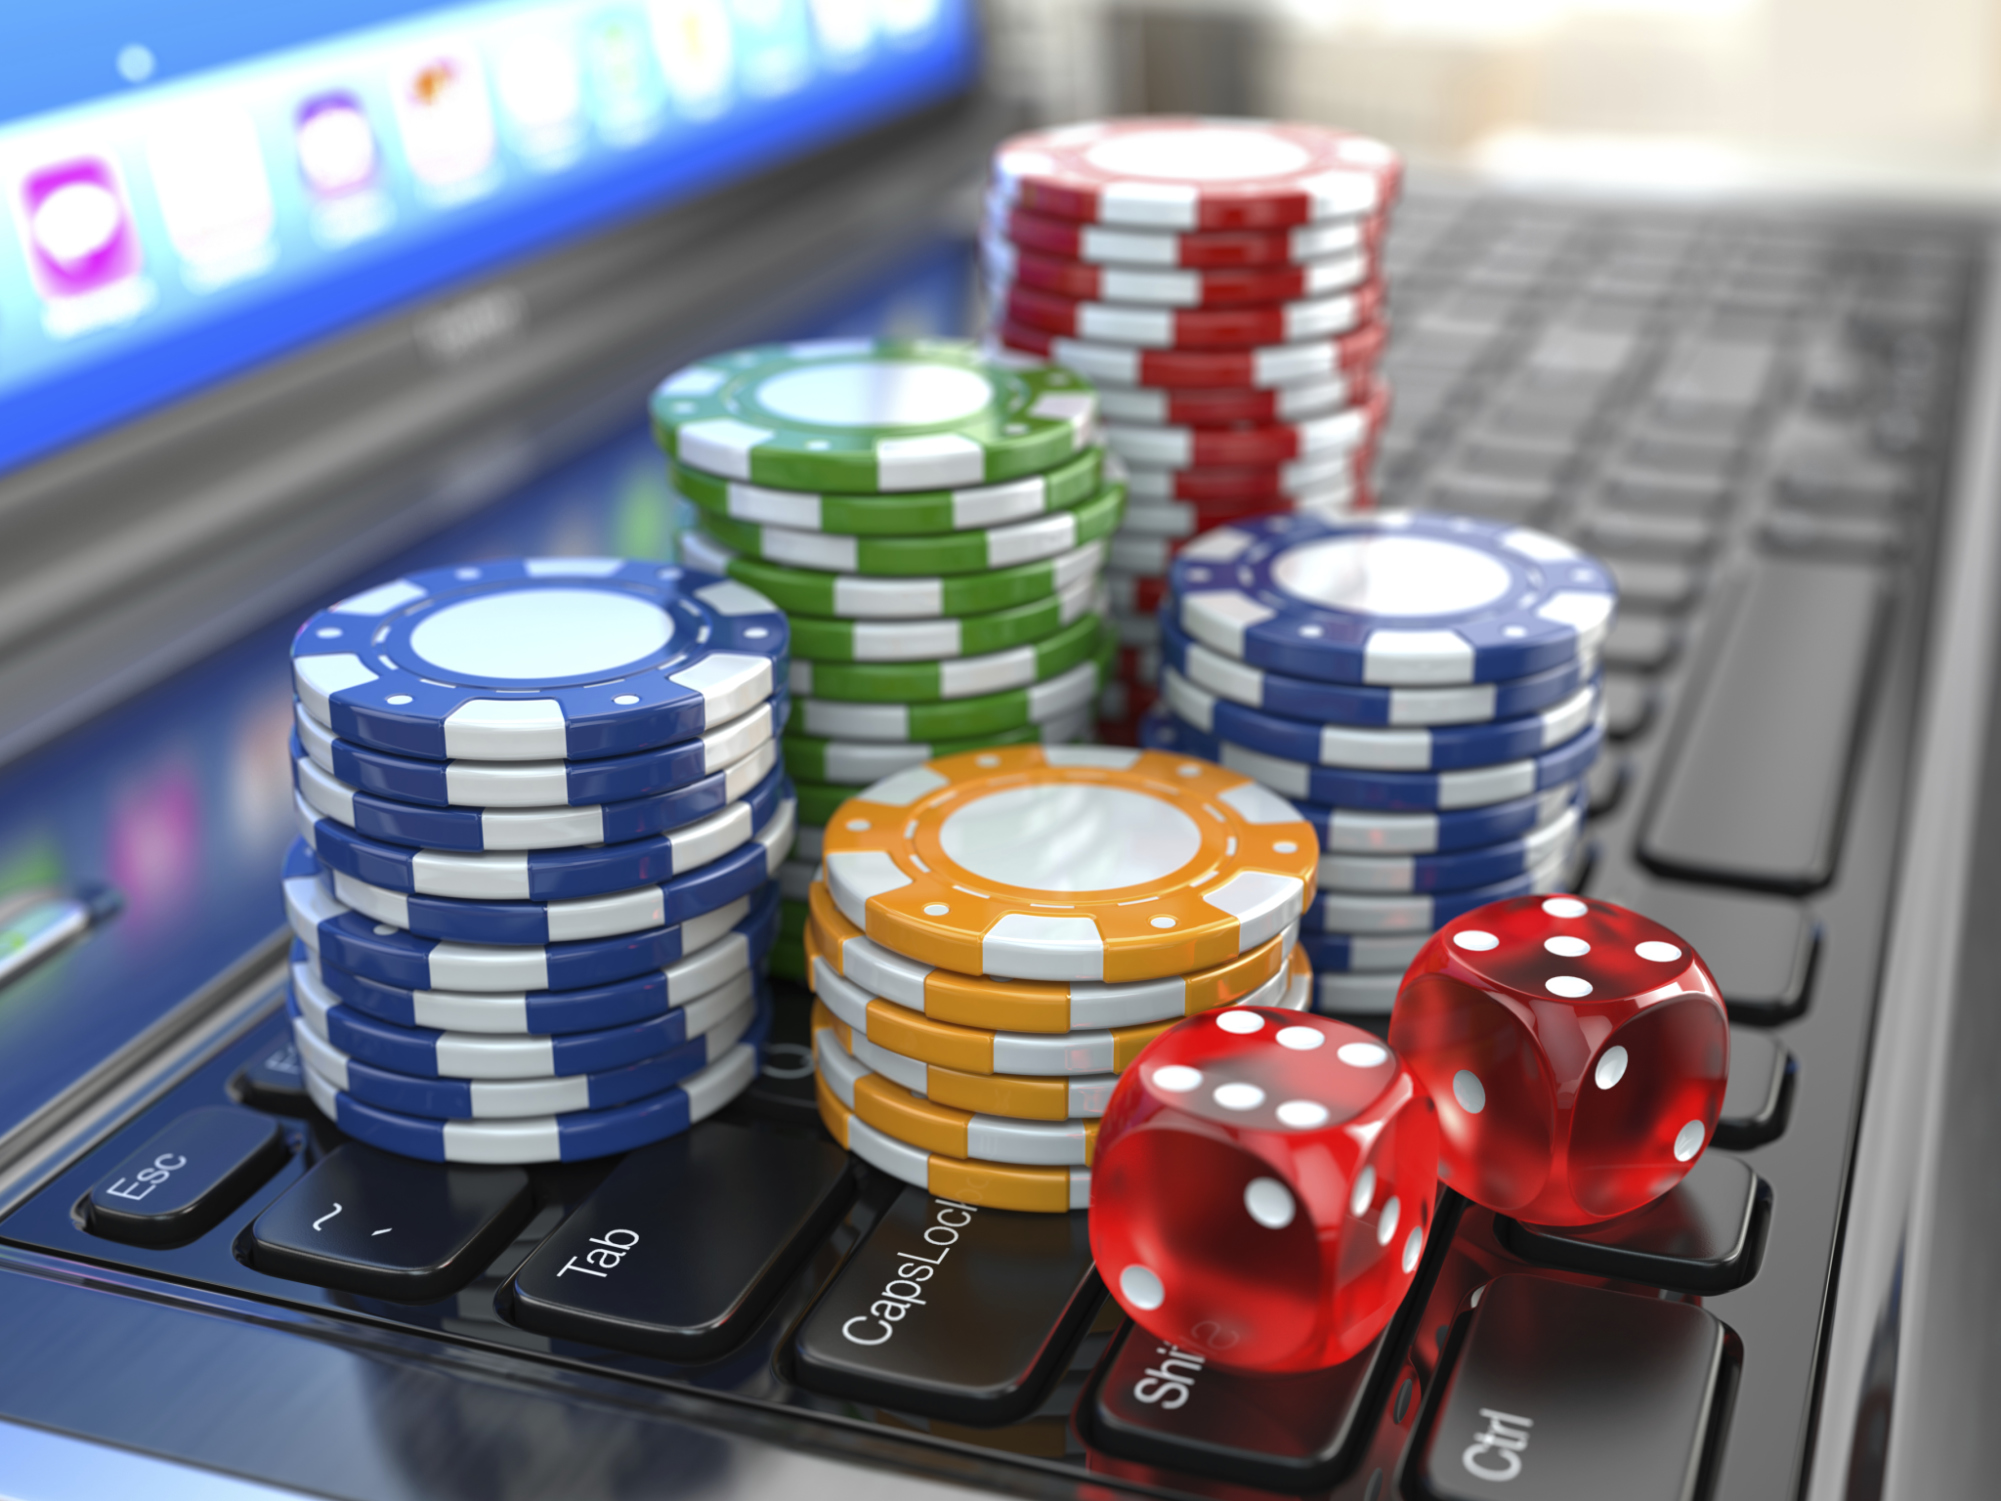 Citra Game Casino Dipandang Sebagai Tempat Maksiat